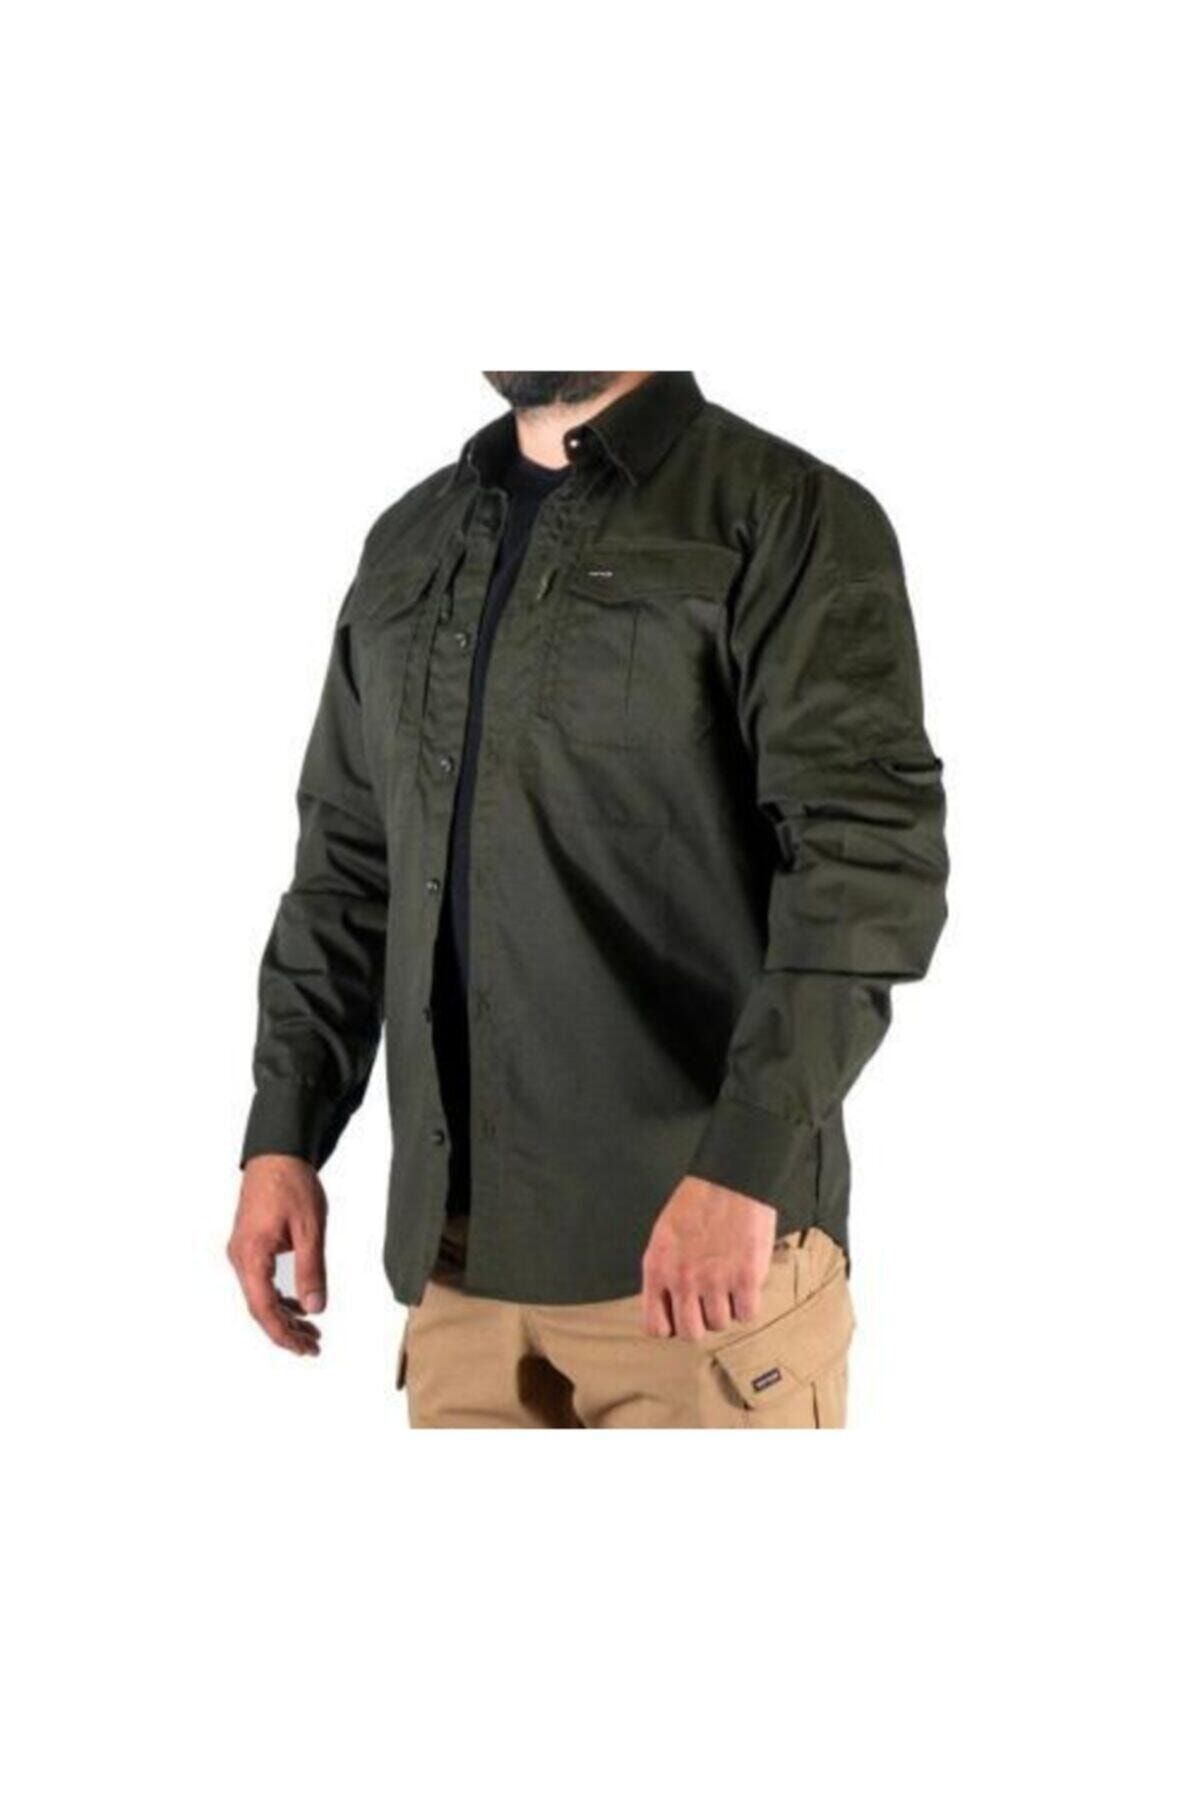 Silyon Askeri Giyim Taktik Gömlek 4 Mevsim Giyilebilir Taktikal Gömlek Tactical Gömlek